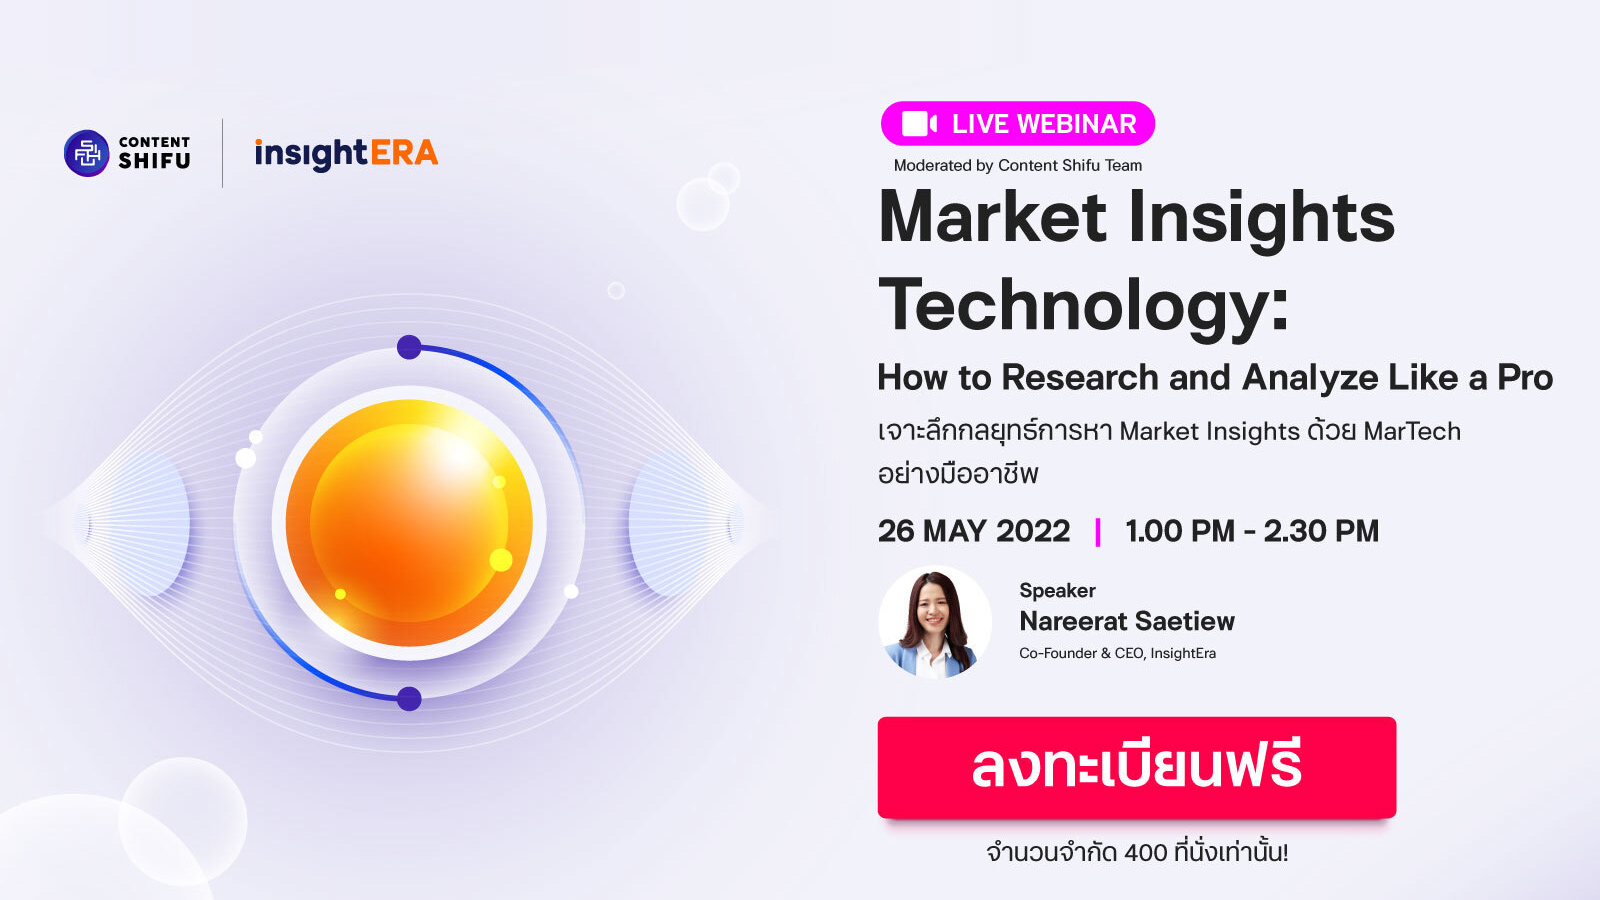 มาเรียนรู้กับงาน Webinar “Market Insights Technology” เจาะลึกกลยุทธ์การหา Market Insights ด้วย MarTech อย่างมืออาชีพ